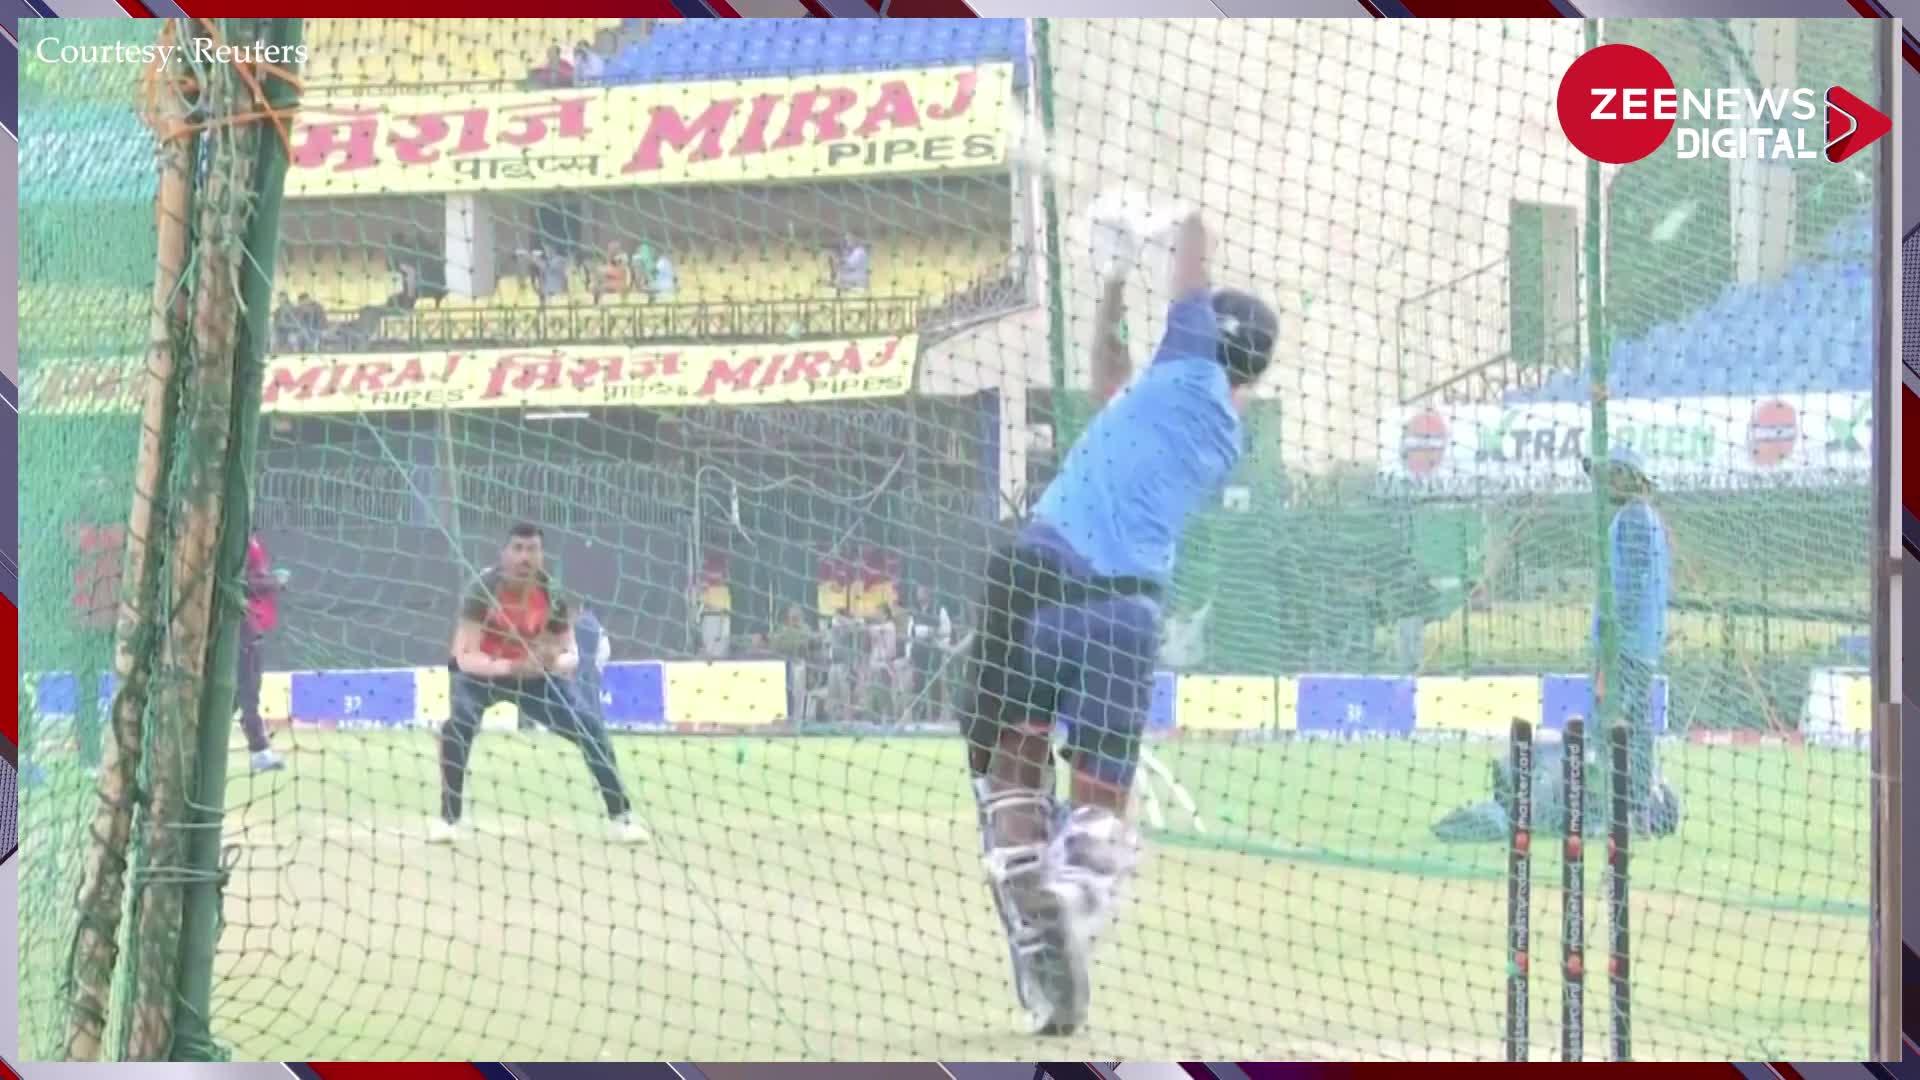 IND vs NZ: तीसरा वनडे मैच जीतकर No.1 बनने की तैयारी में जुटी टीम इंडिया, खिलाड़ियों ने जमकर नैट्स में बहाया पसीना